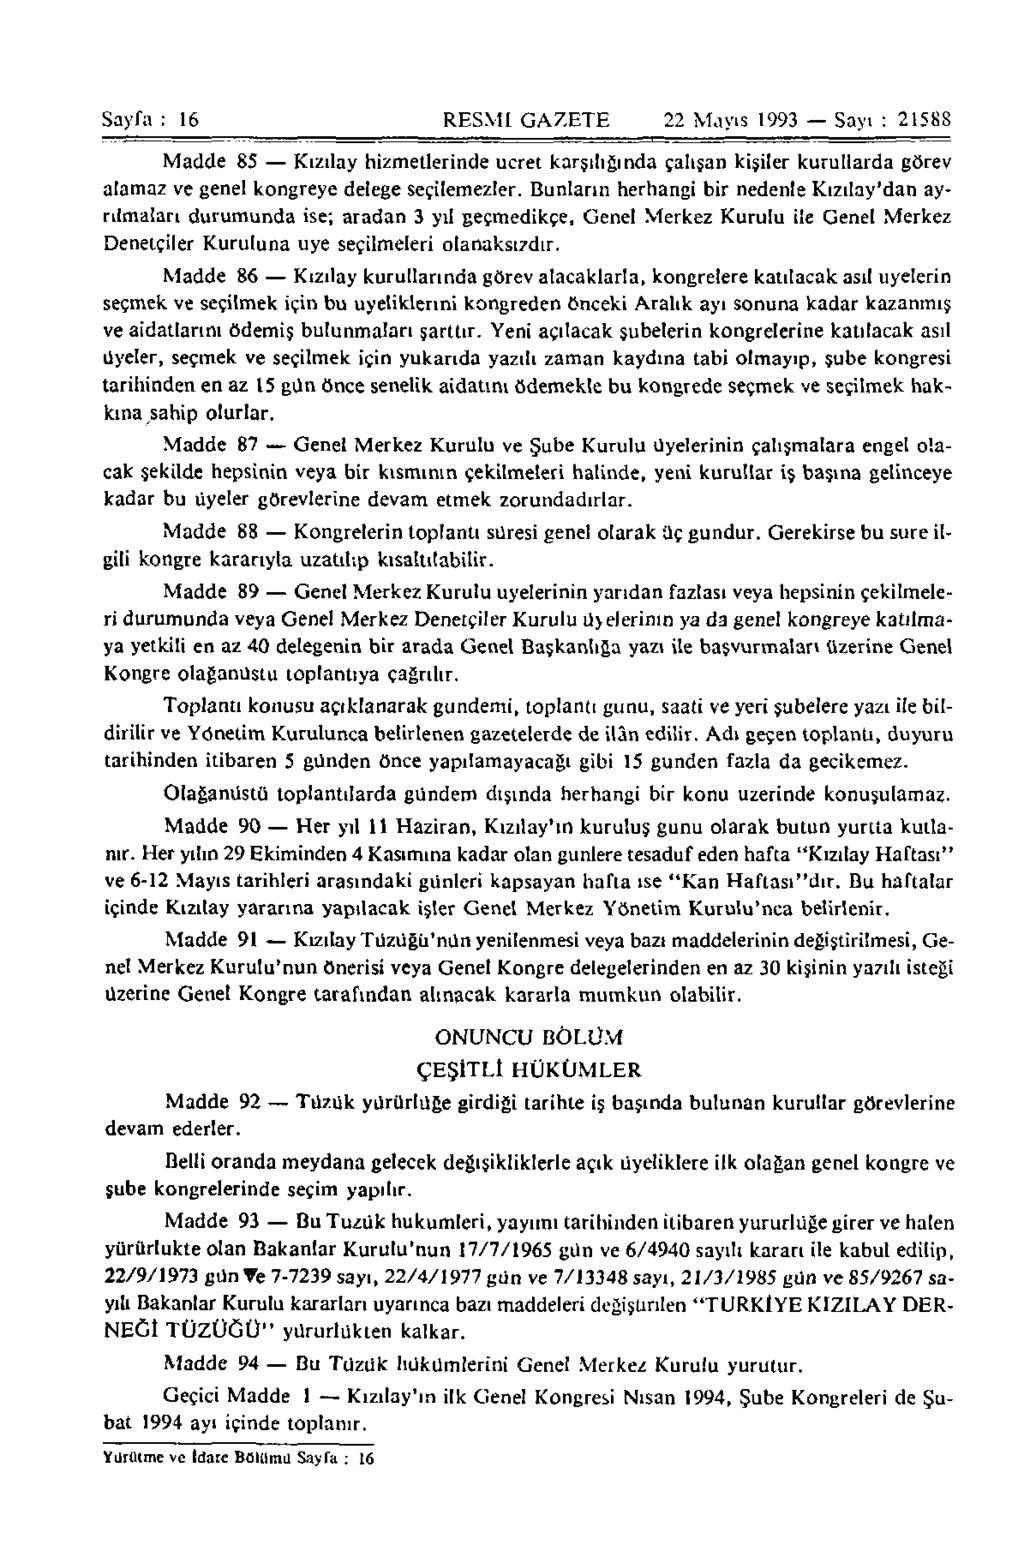 Sayfa : 16 RESMİ GAZETE 22 Mayıs 1993 Sayı : 21588 Madde 85 Kızılay hizmetlerinde ücret karşılığında çalışan kişiler kurullarda görev alamaz ve genel kongreye delege seçilemezler.